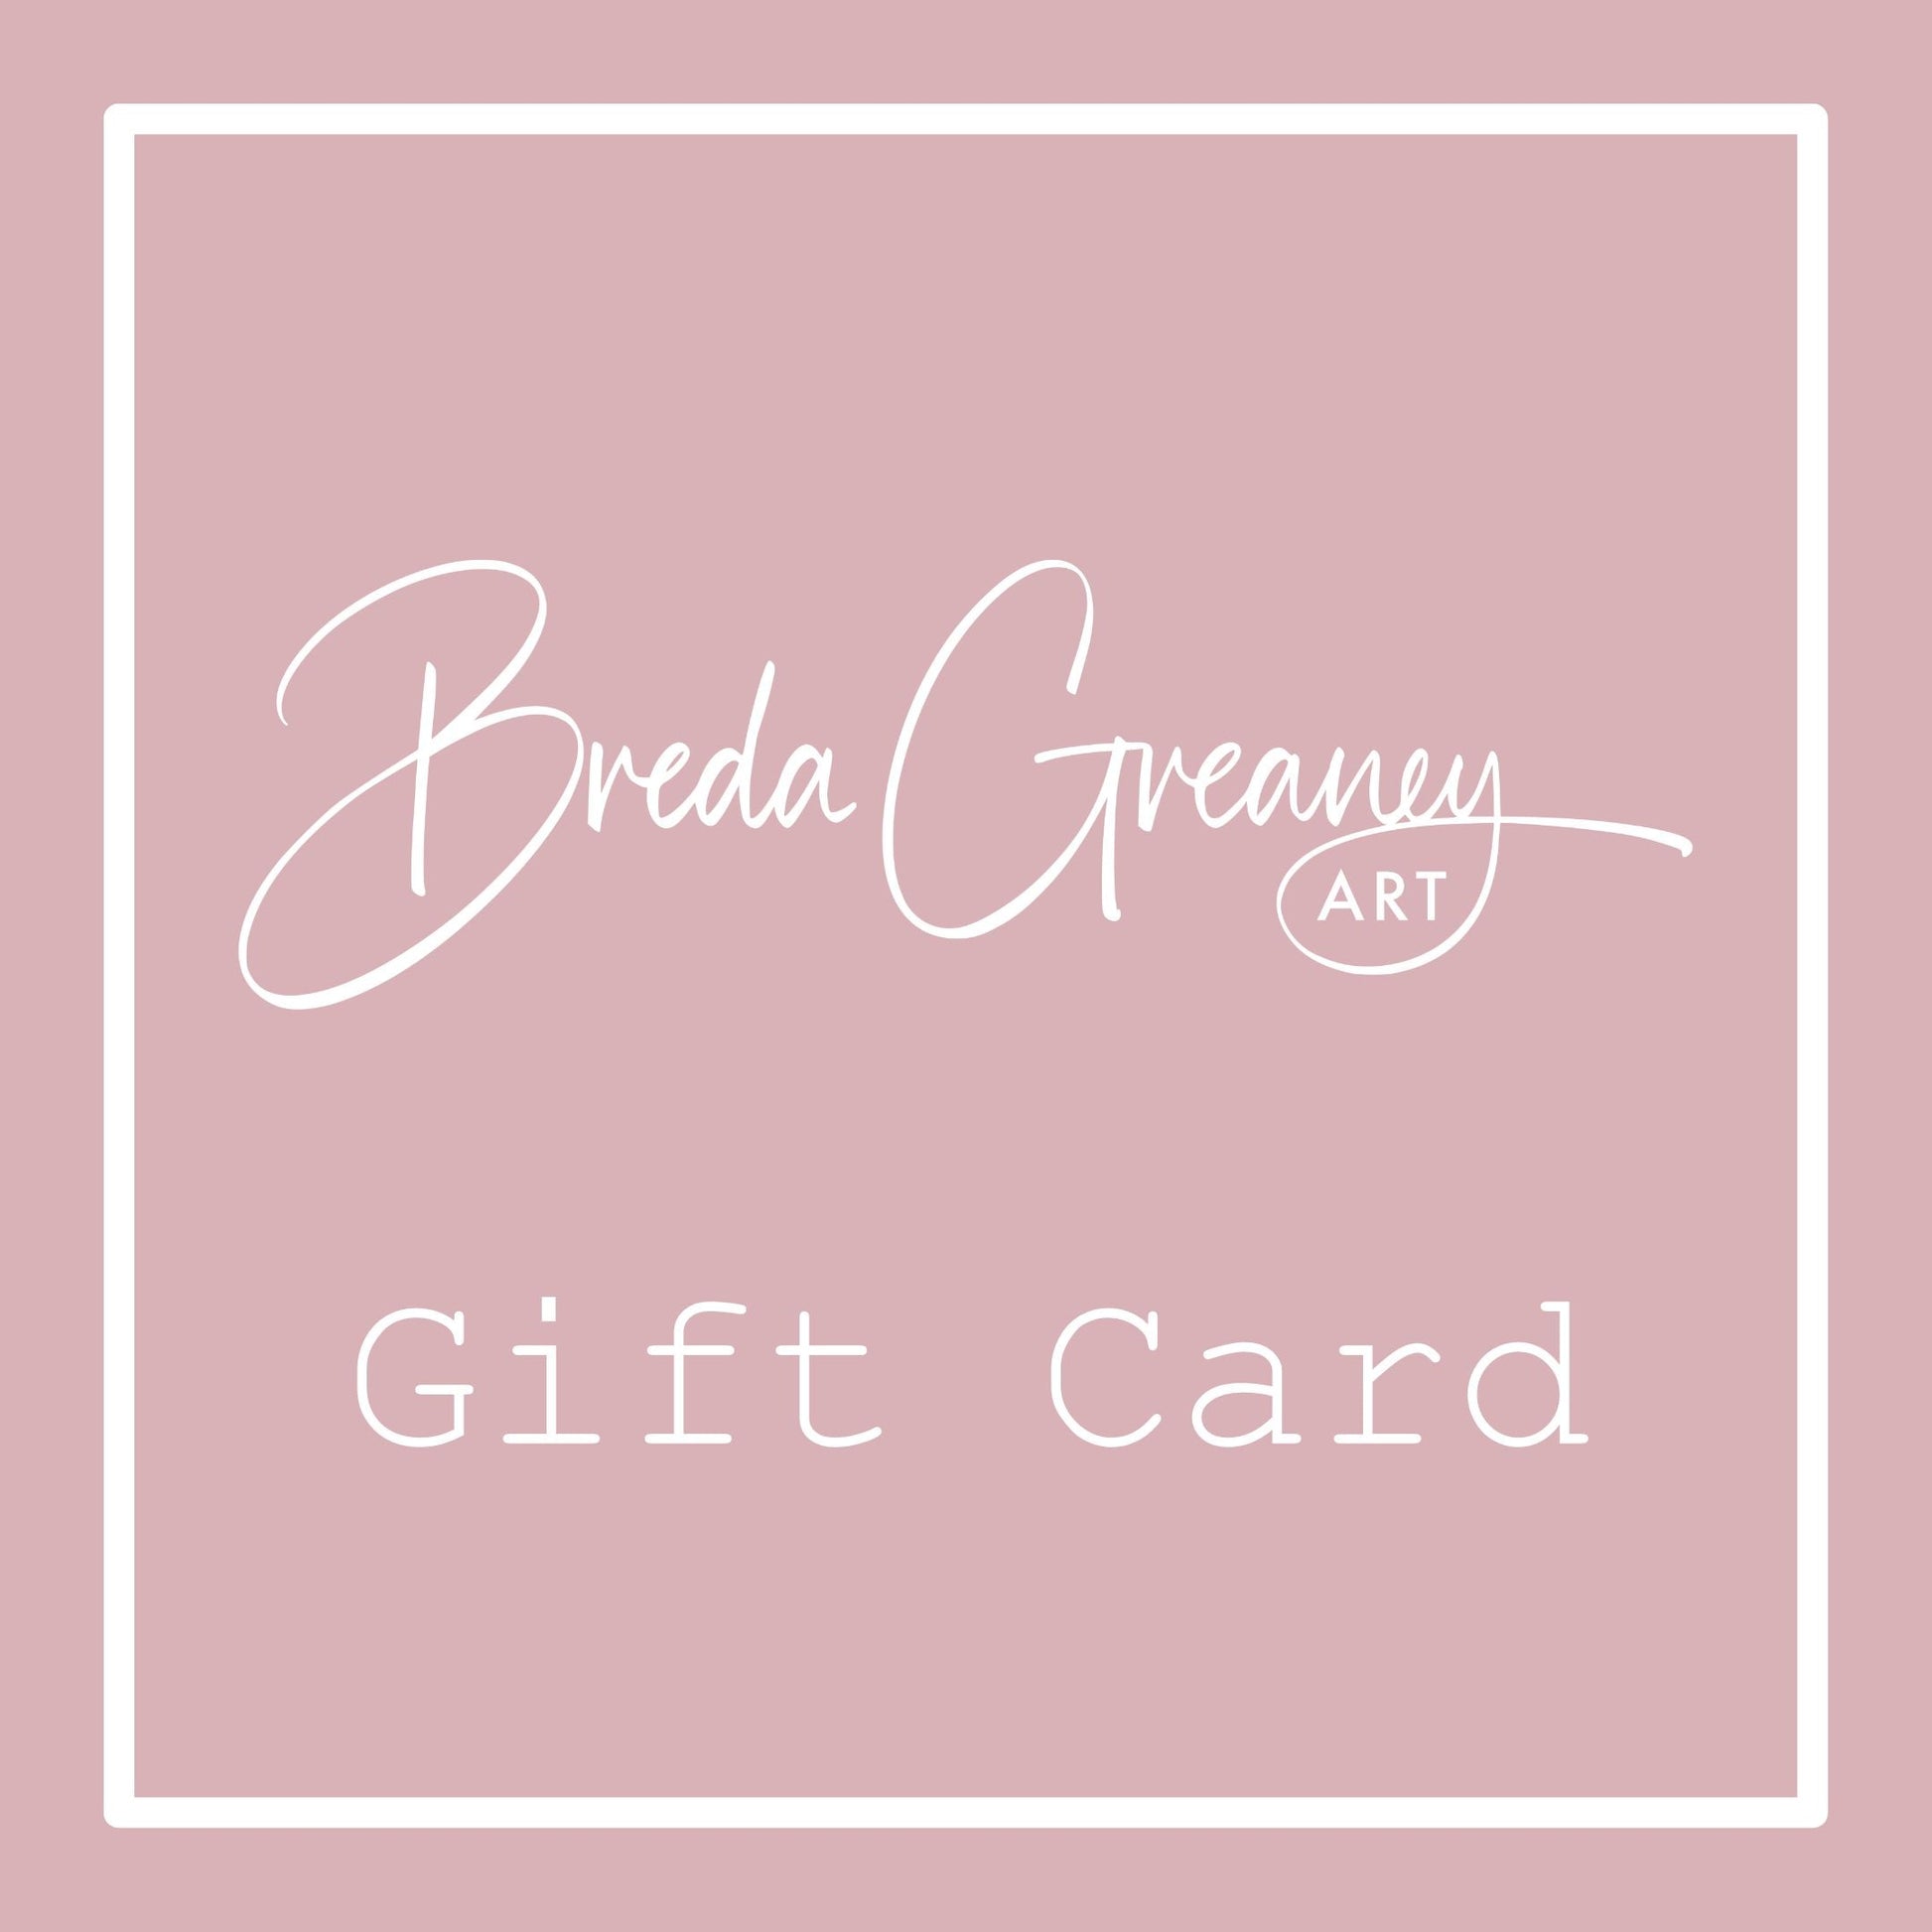 Breda Greaney Art Gift Card-Breda Greaney Art